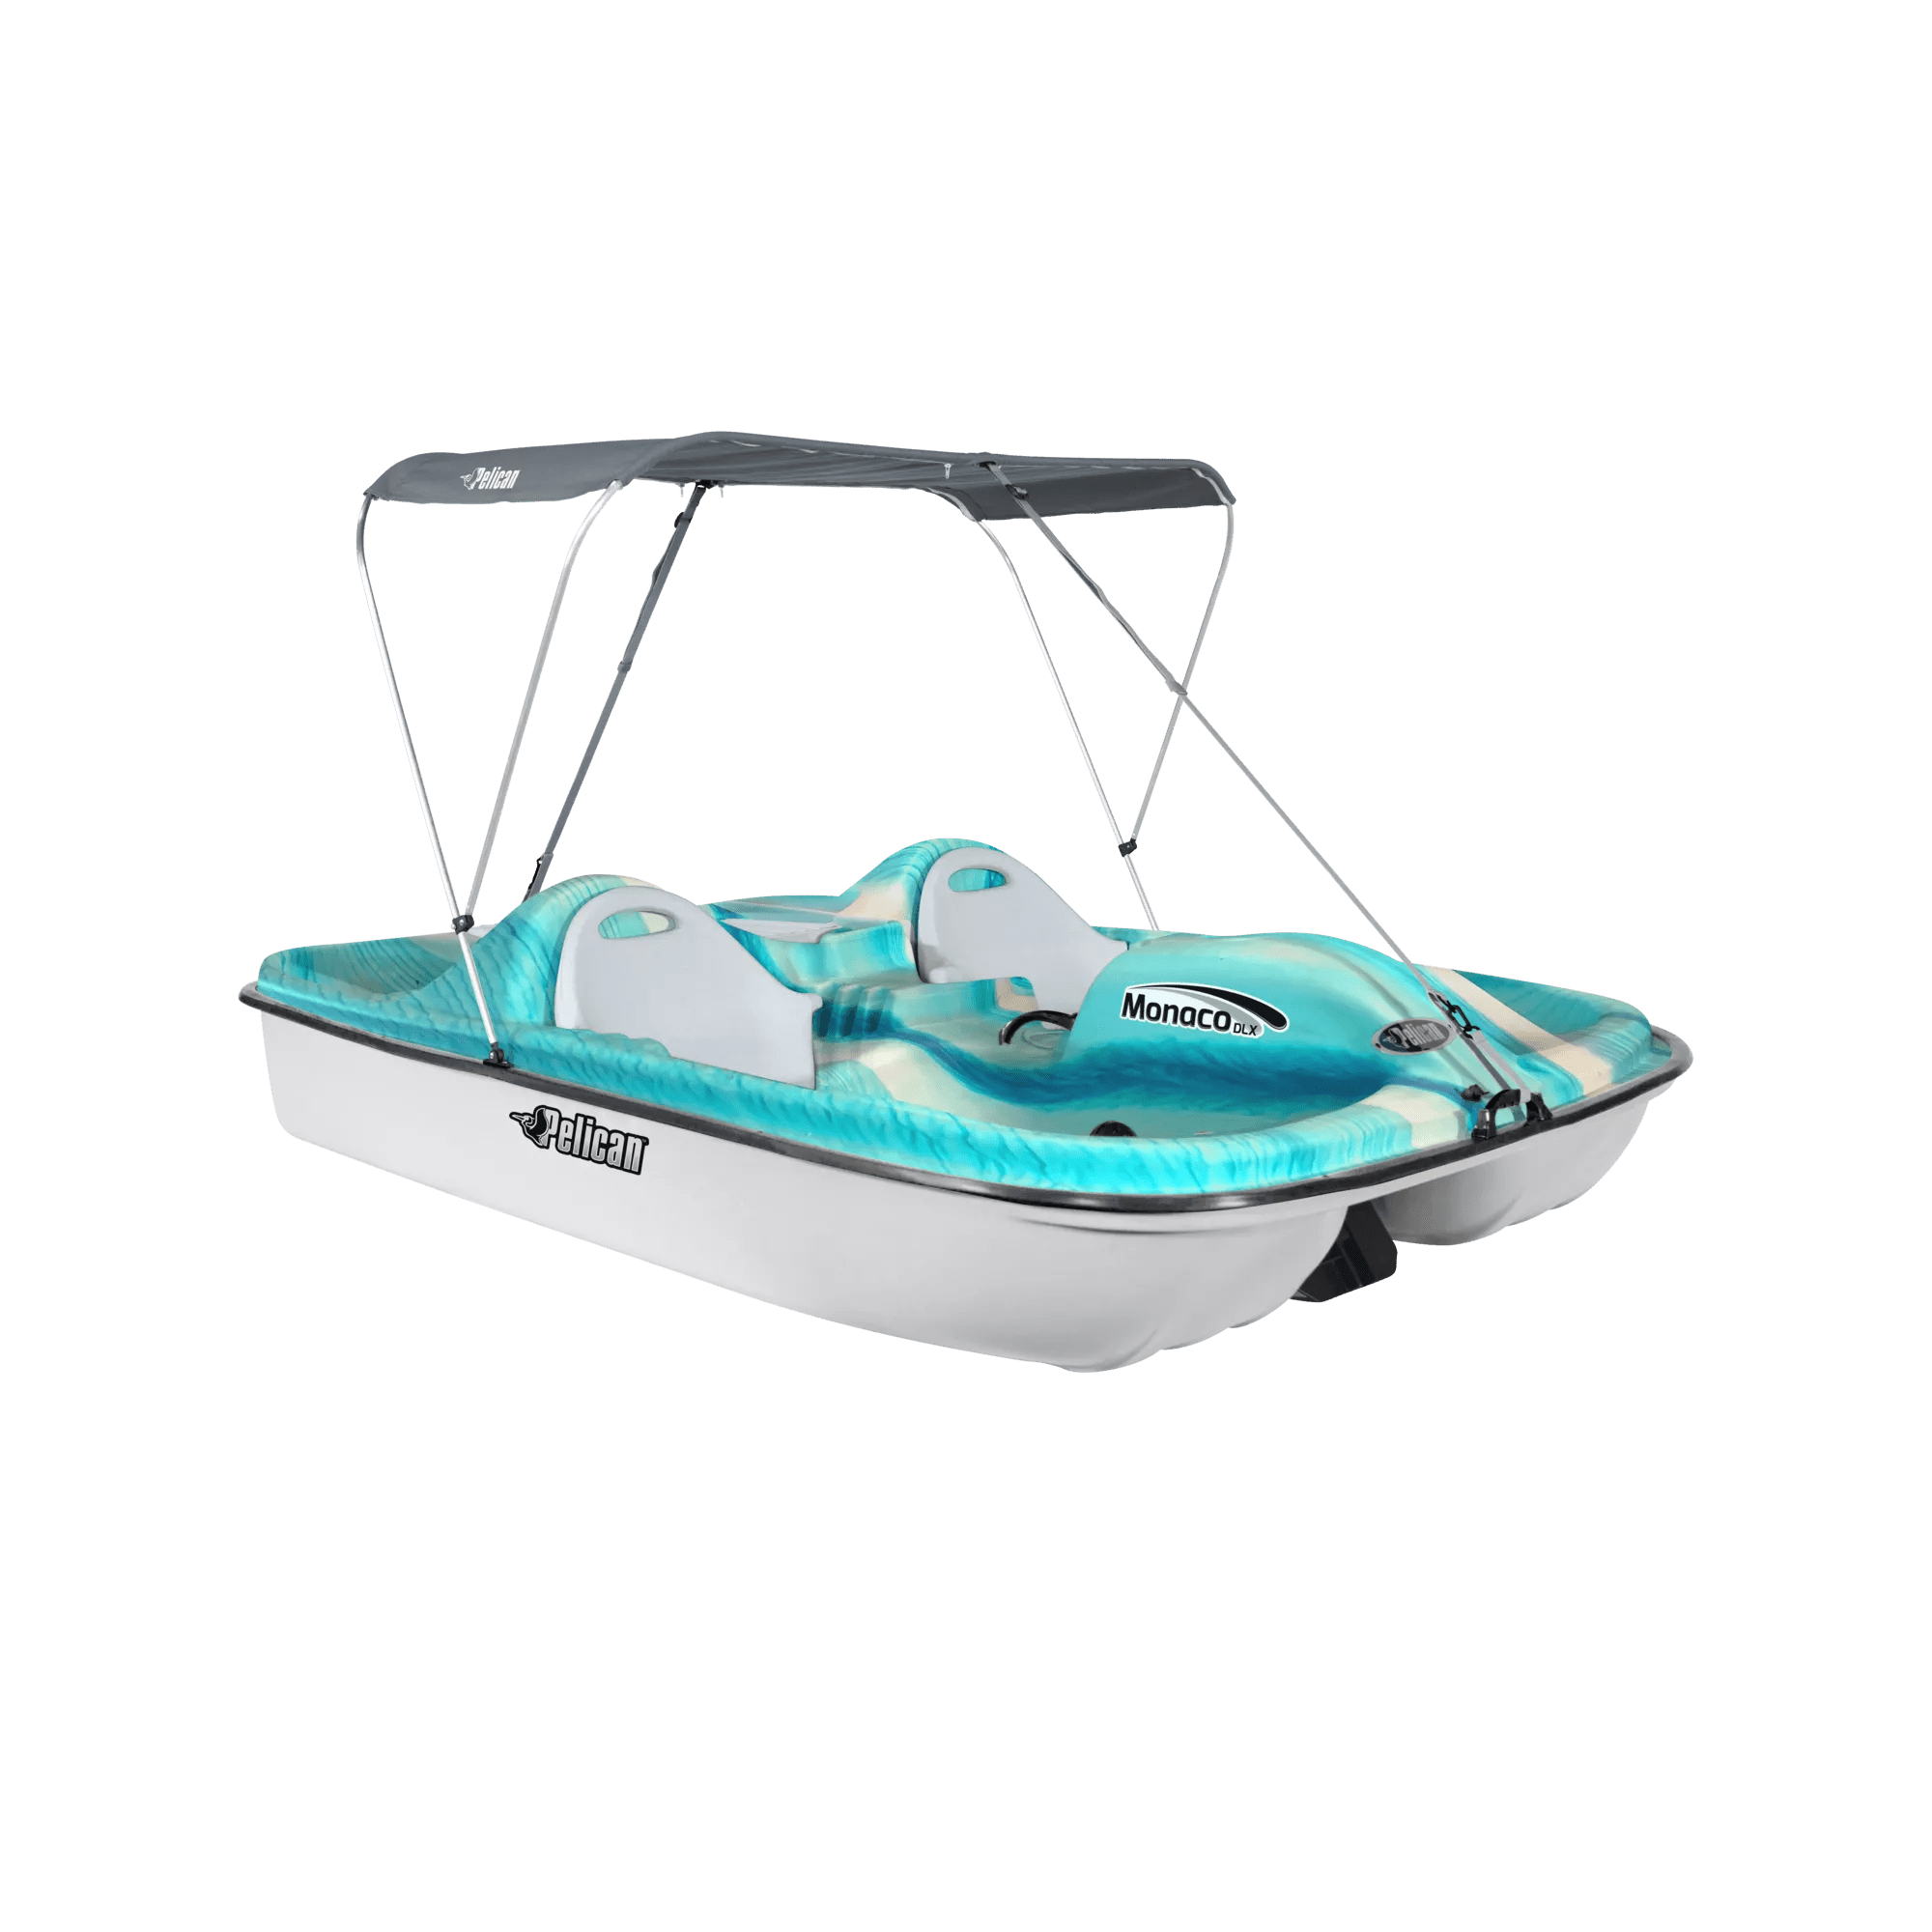 PELICAN - Monaco DLX Pedal Boat - Blue - HHF25P203 - ISO 